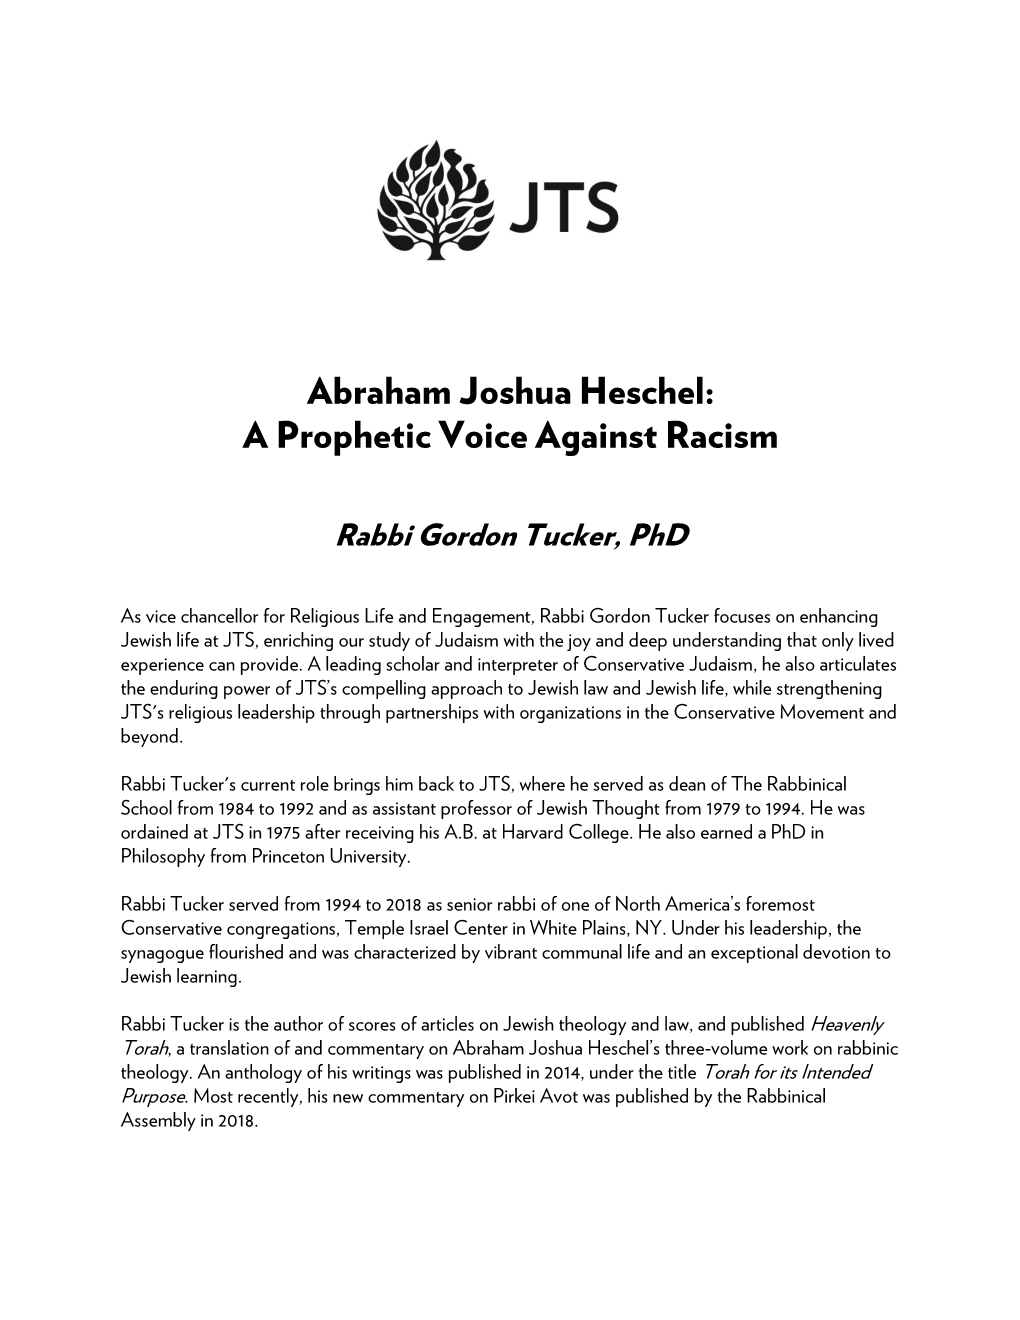 Abraham Joshua Heschel: a Prophetic Voice Against Racism